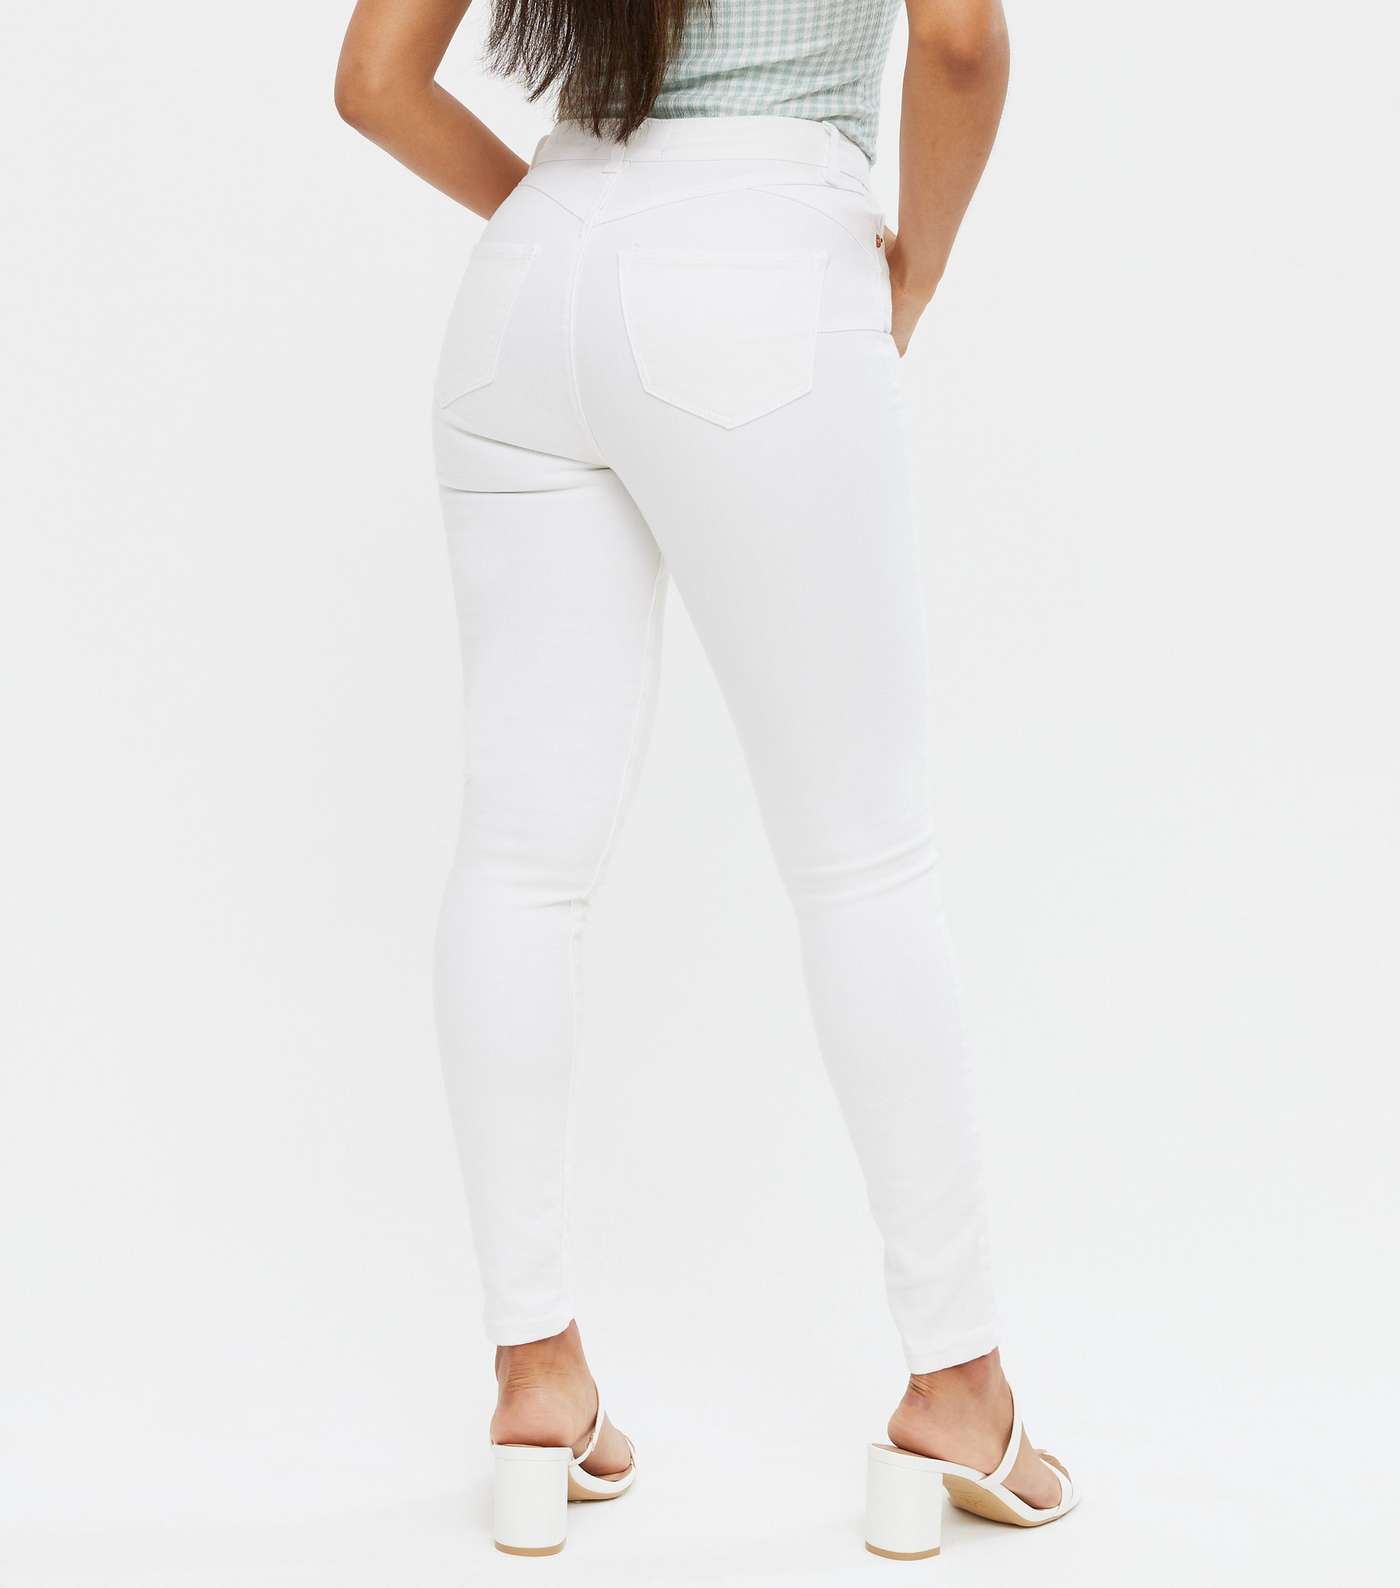 Petite White Lift & Shape Jenna Skinny Jeans Image 4